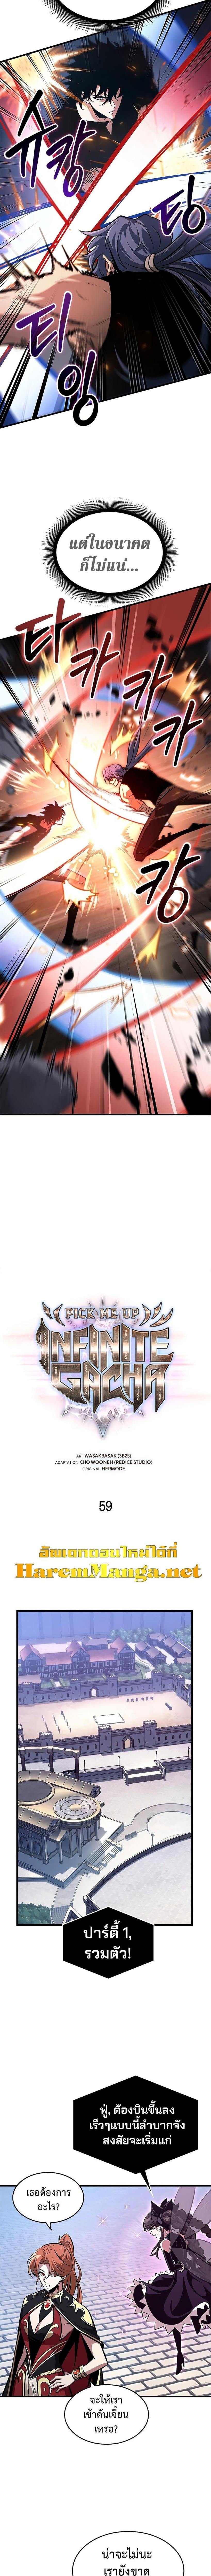 Pick Me Up, Infinite Gacha 59 03